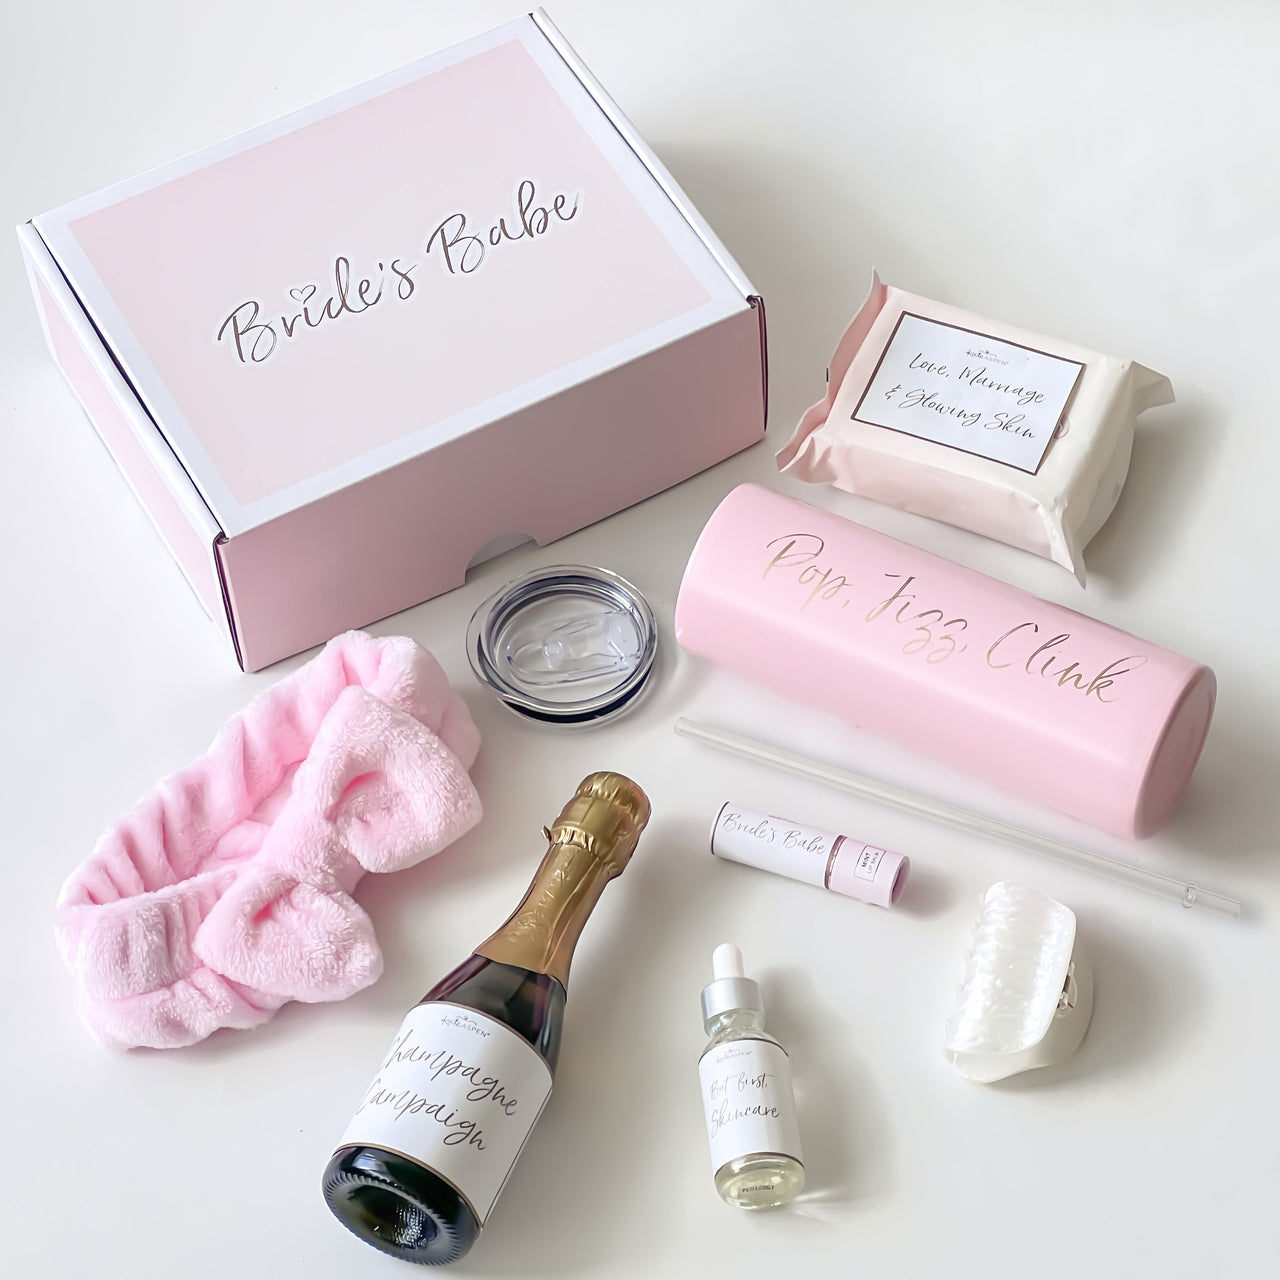 Bride's Babe Bridesmaid Gift Box Kit - Main Image | My Wedding Favors